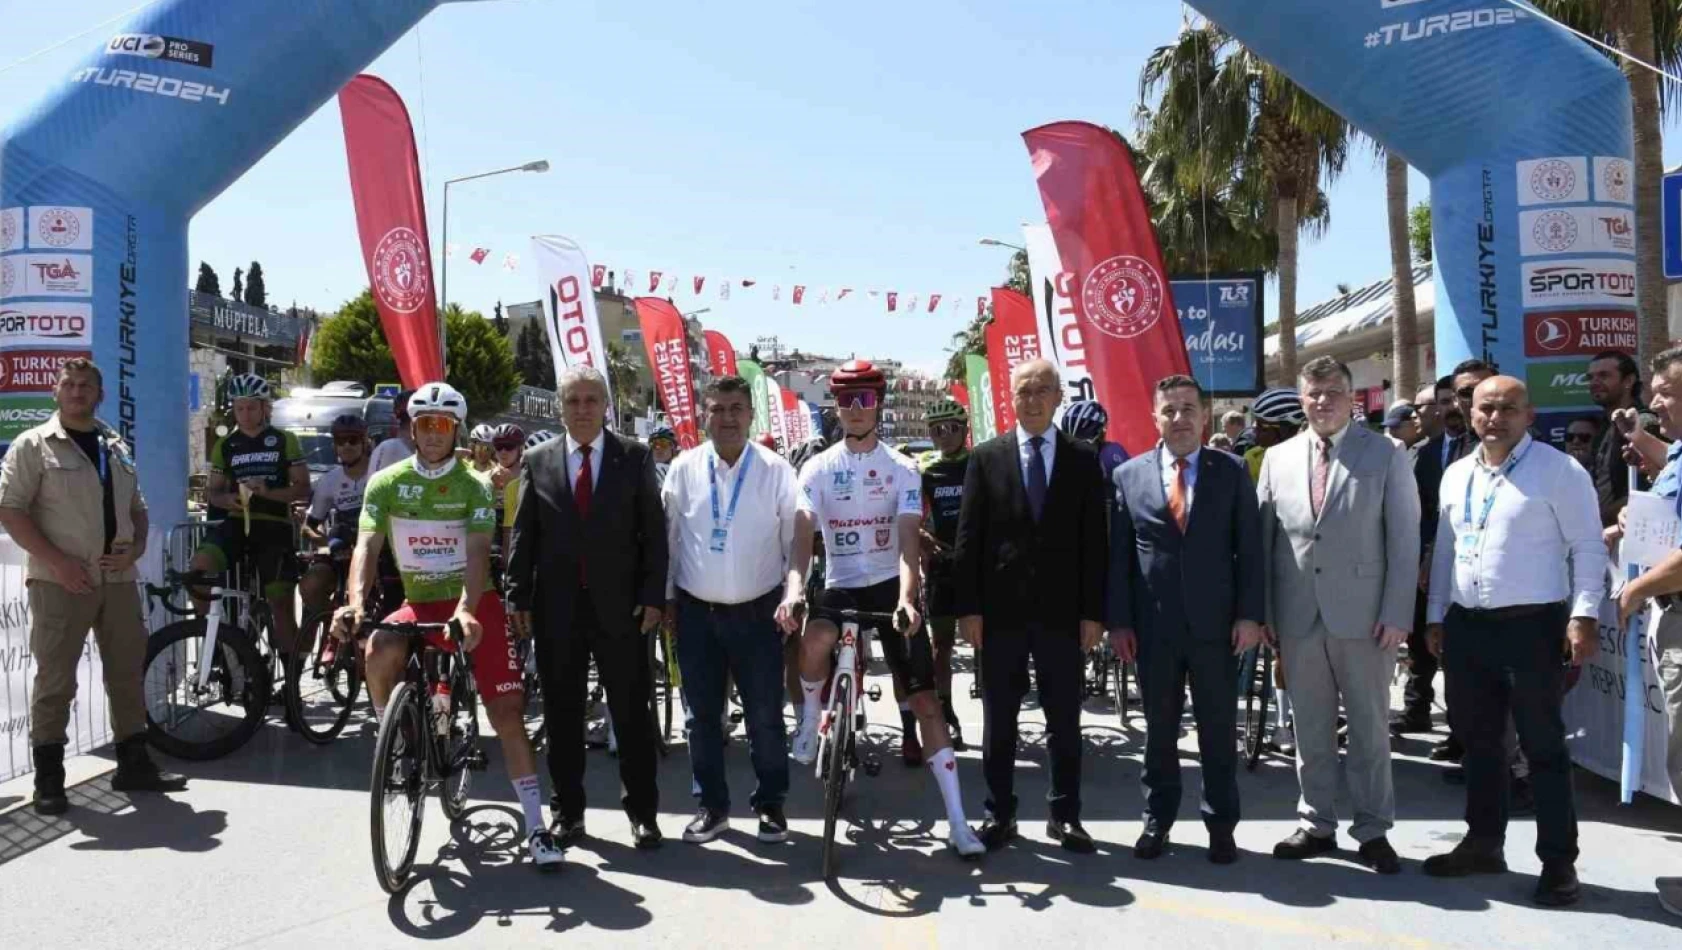 Cumhurbaşkanlığı Bisiklet Turu'nda Kuşadası-Manisa (Spil Dağı) etabı başladı